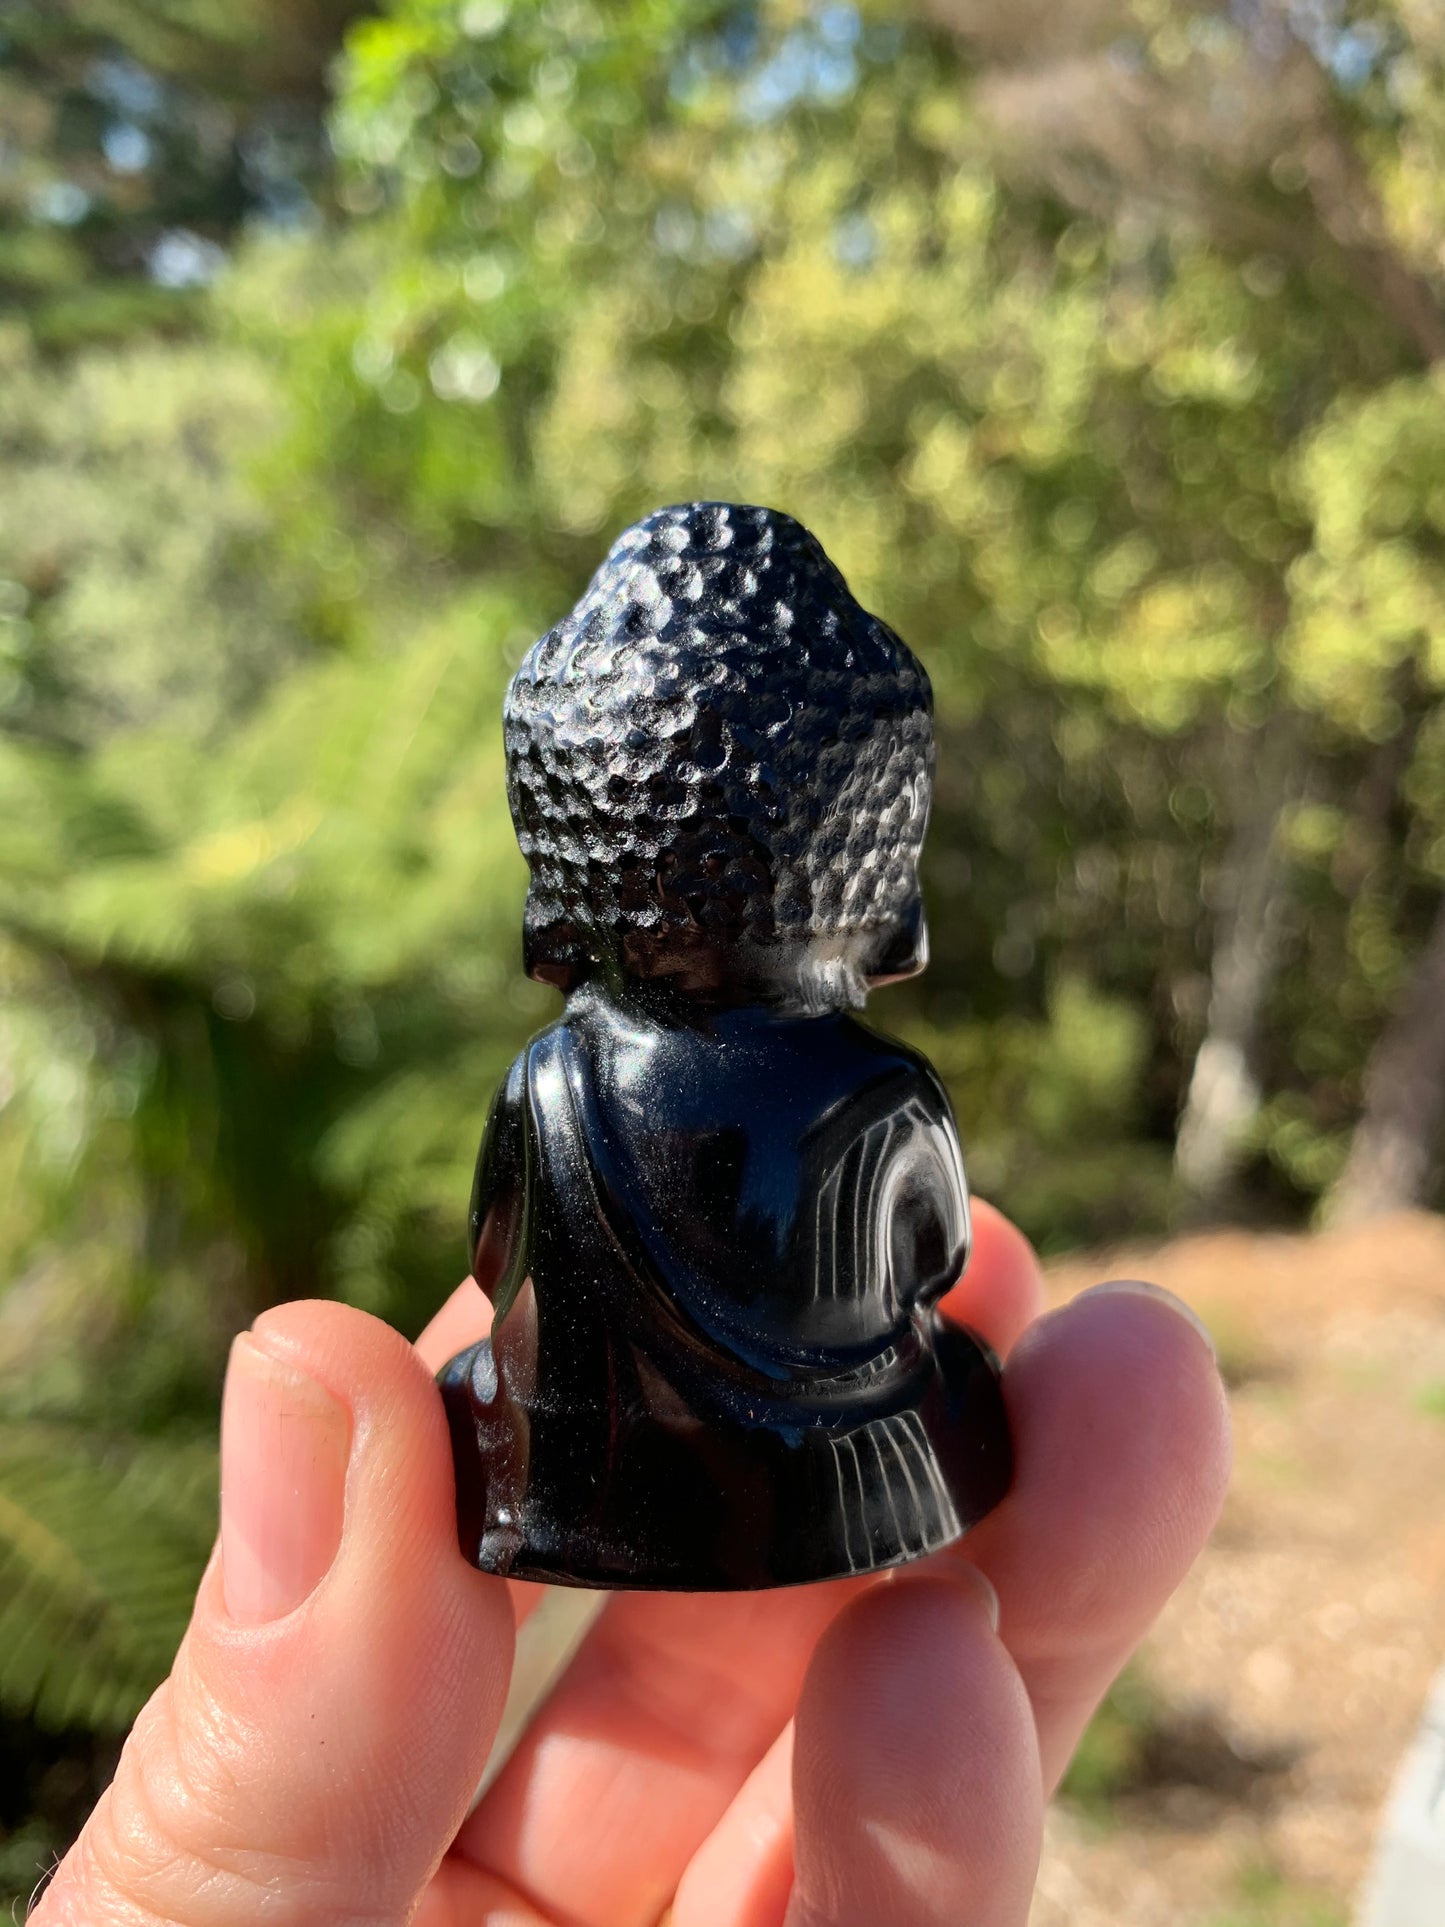 Black Obsidian Carved Buddha